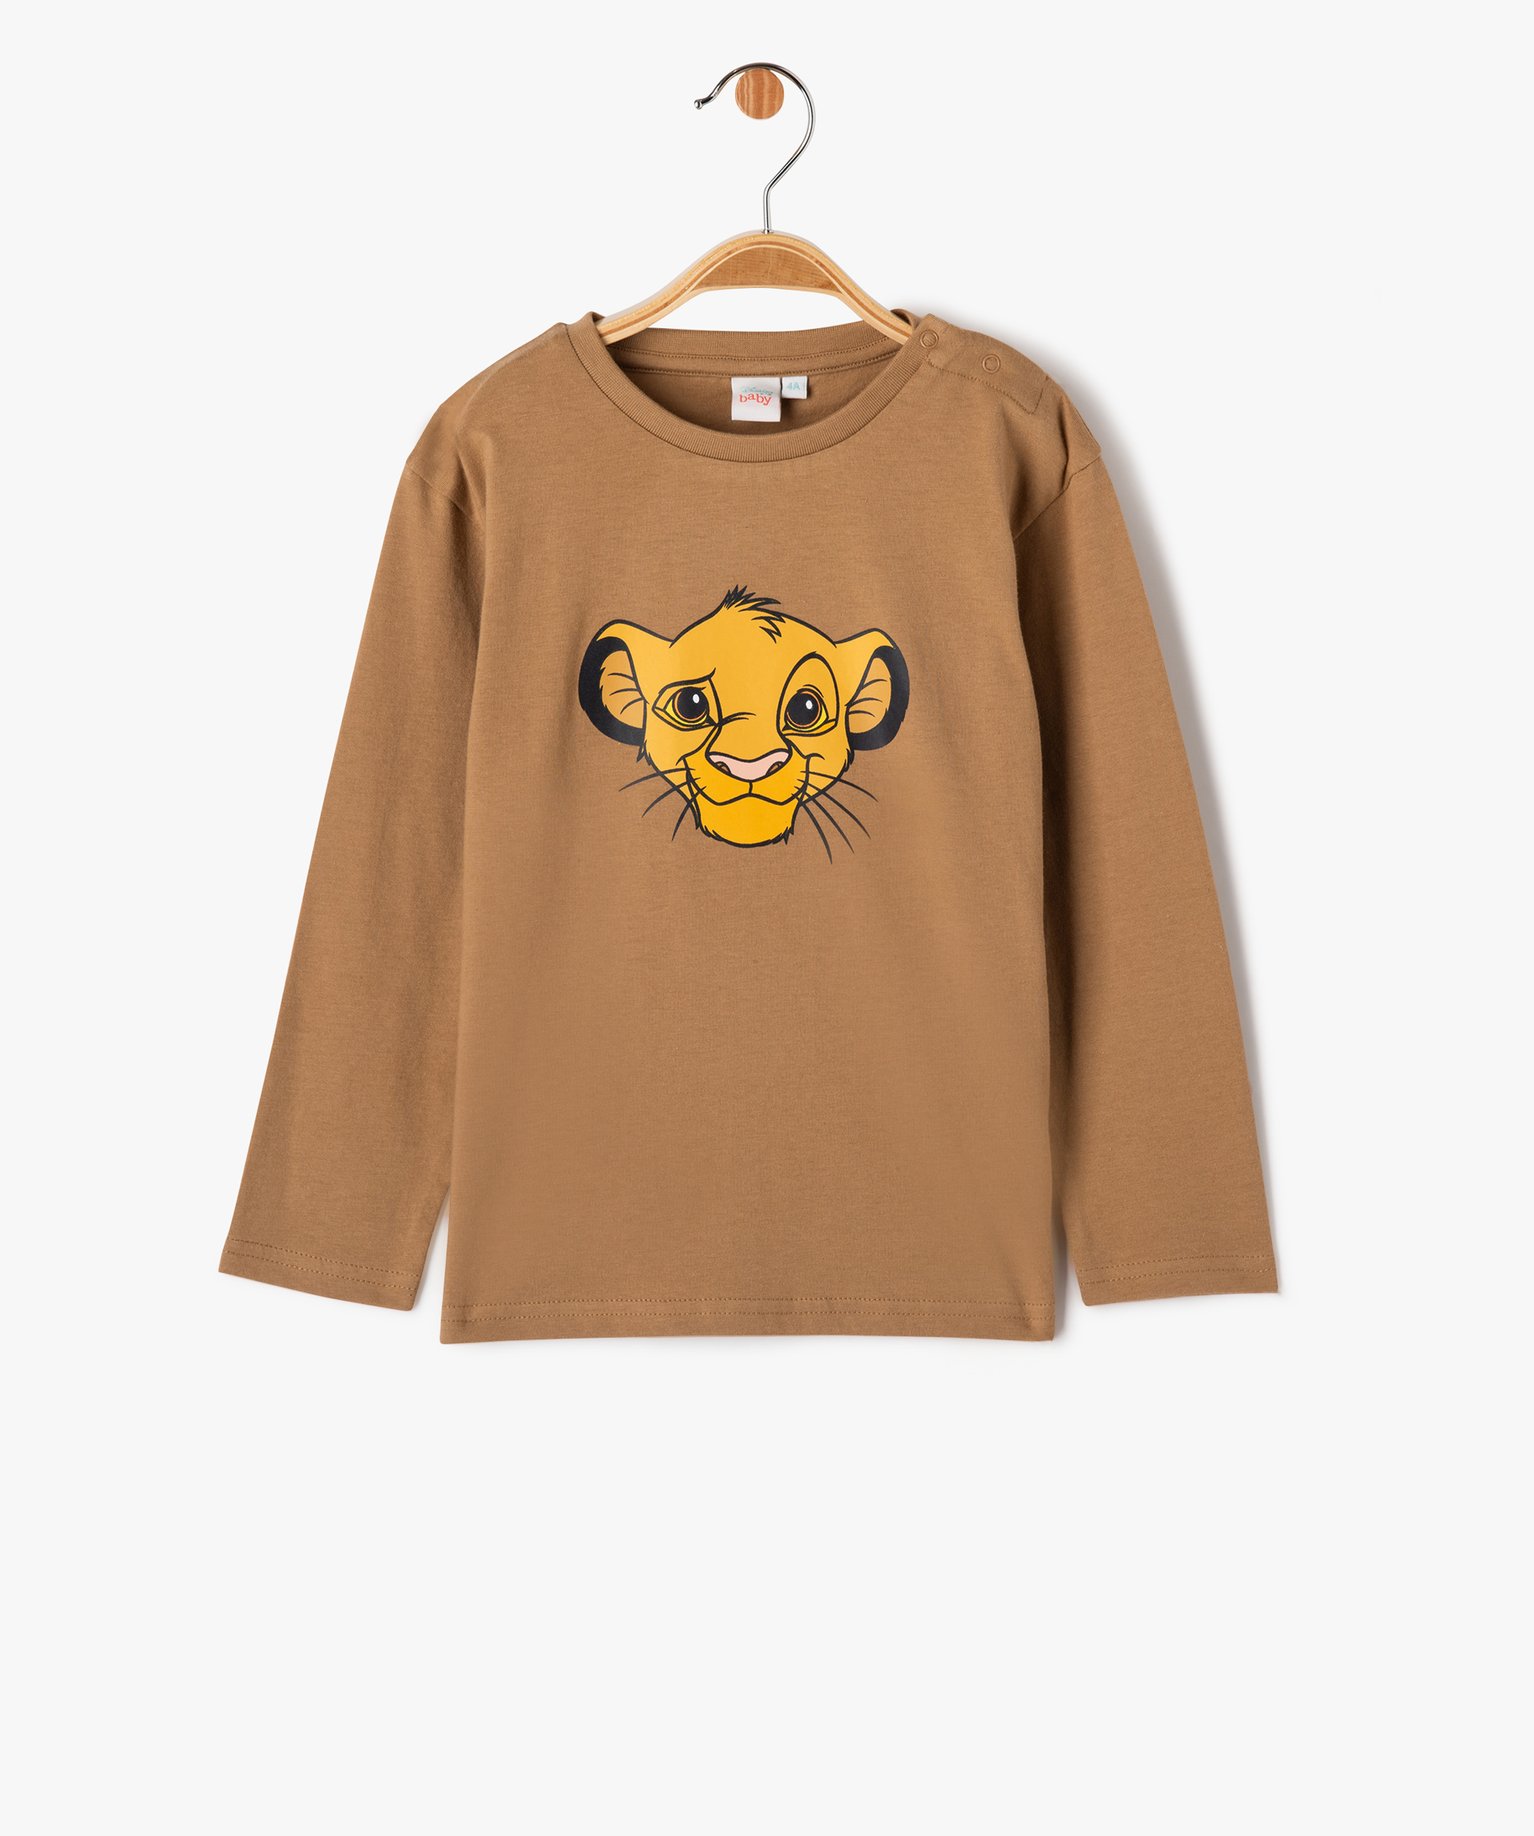 Tee-shirt manches longues imprimé Le Roi Lion bébé garçon - Disney - 3M - marron - ROI LION